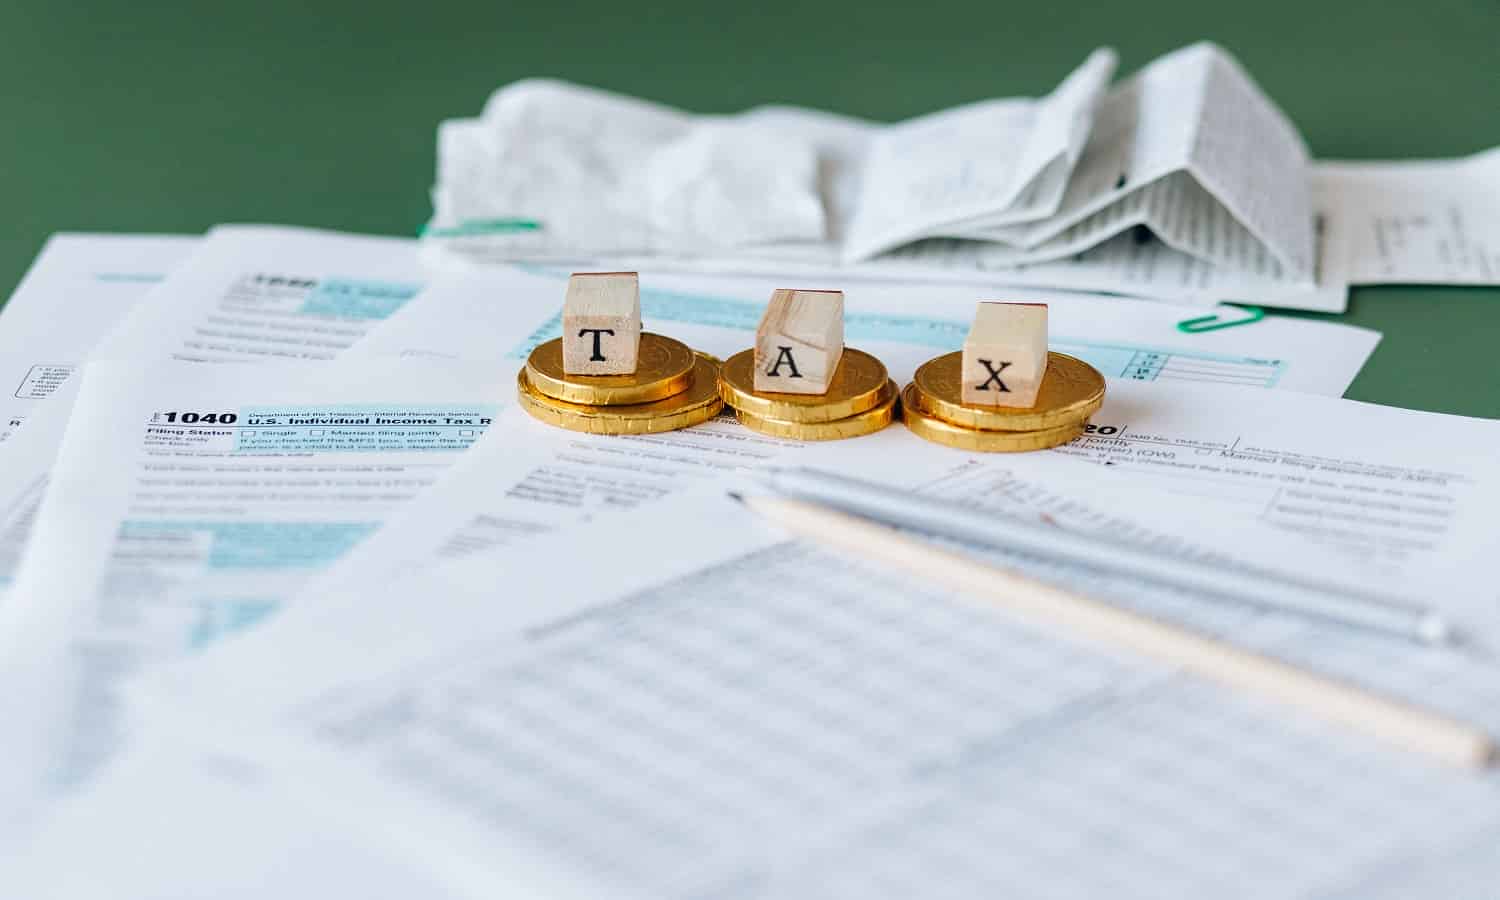 إجراءات لفتح حساب بالدولار لمصلحة الضرائب